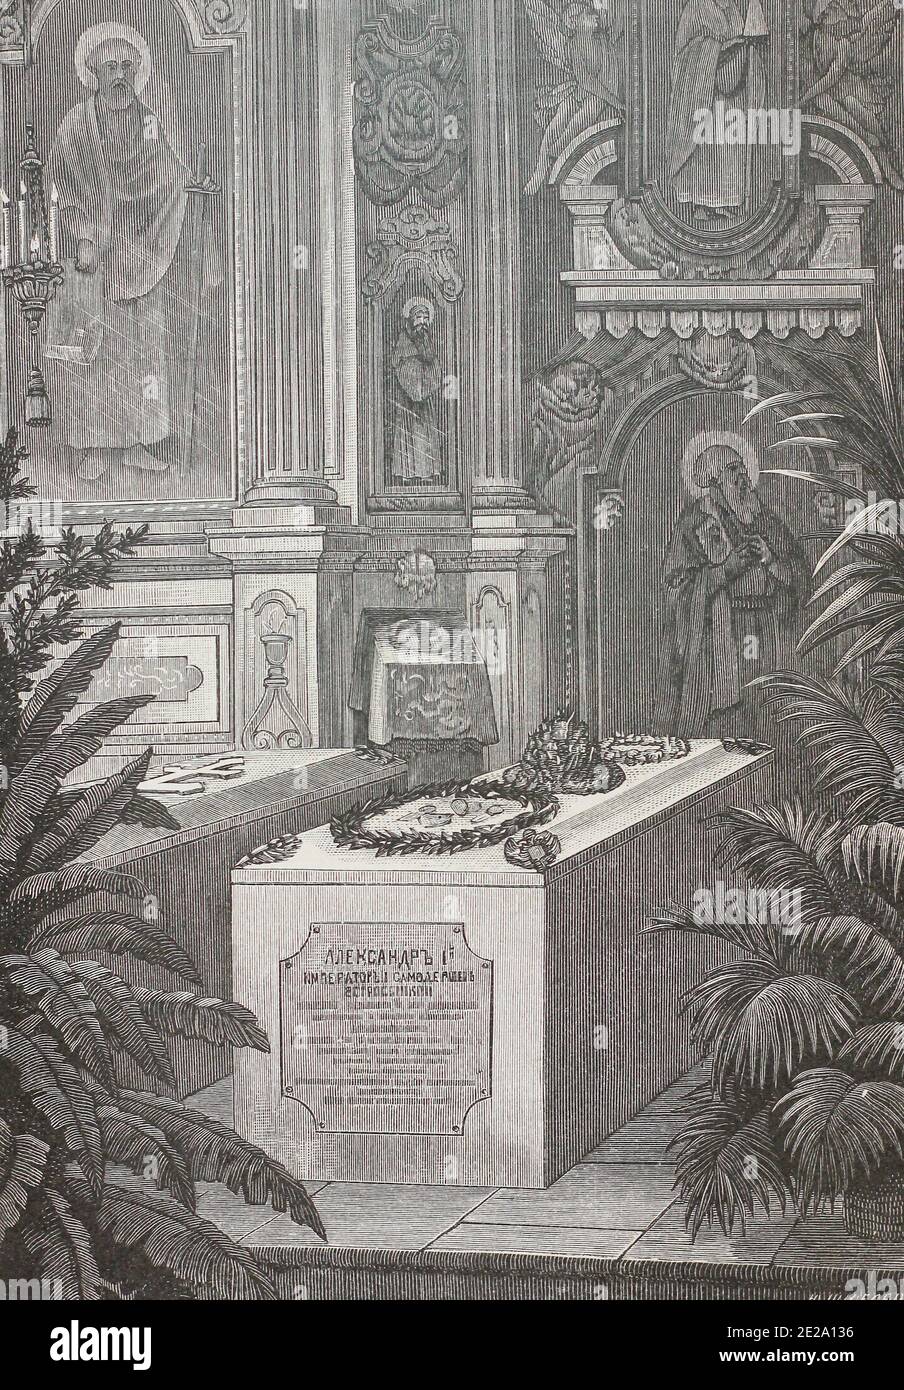 Tombe de l'empereur russe Alexandre Ier dans la cathédrale Pierre-et-Paul à Saint-Pétersbourg. gravure du xixe siècle. Banque D'Images